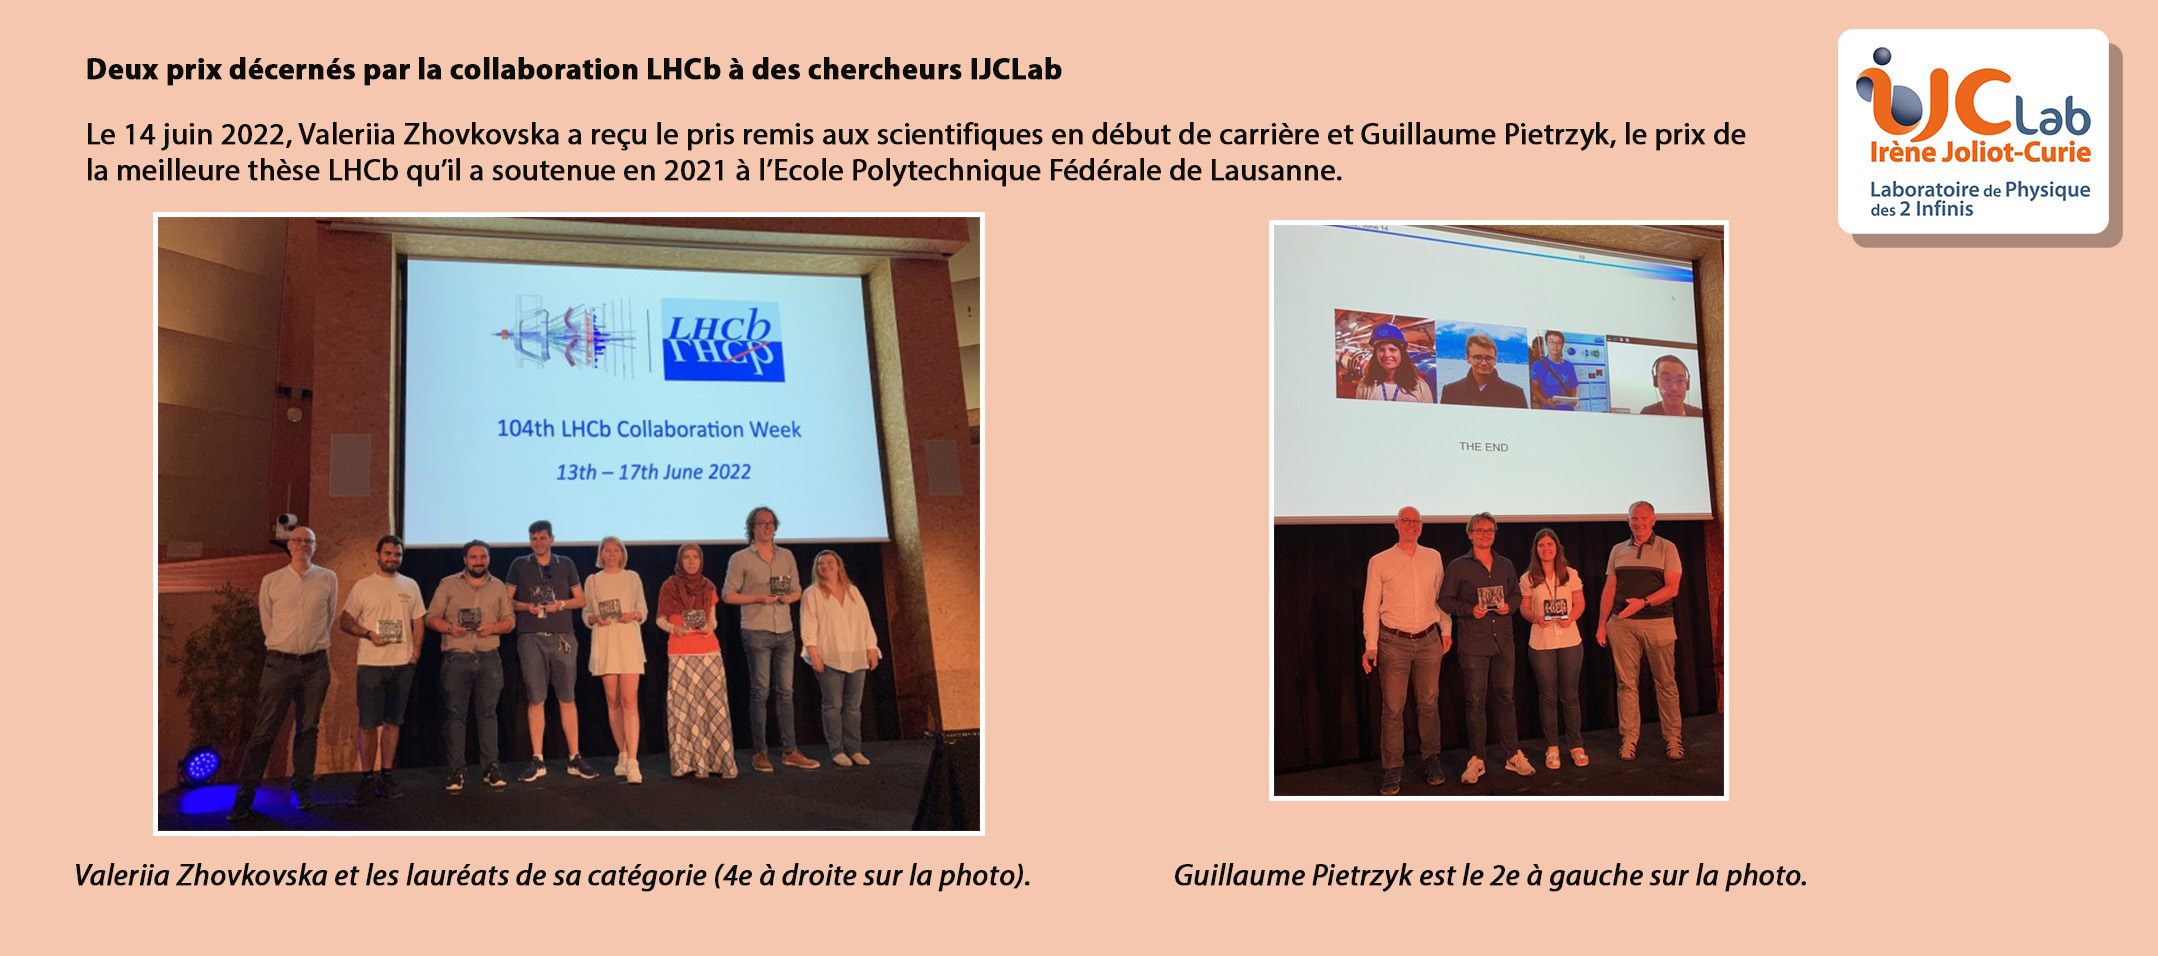 La collaboration LHCb récompense des scientifiques d'IJCLab